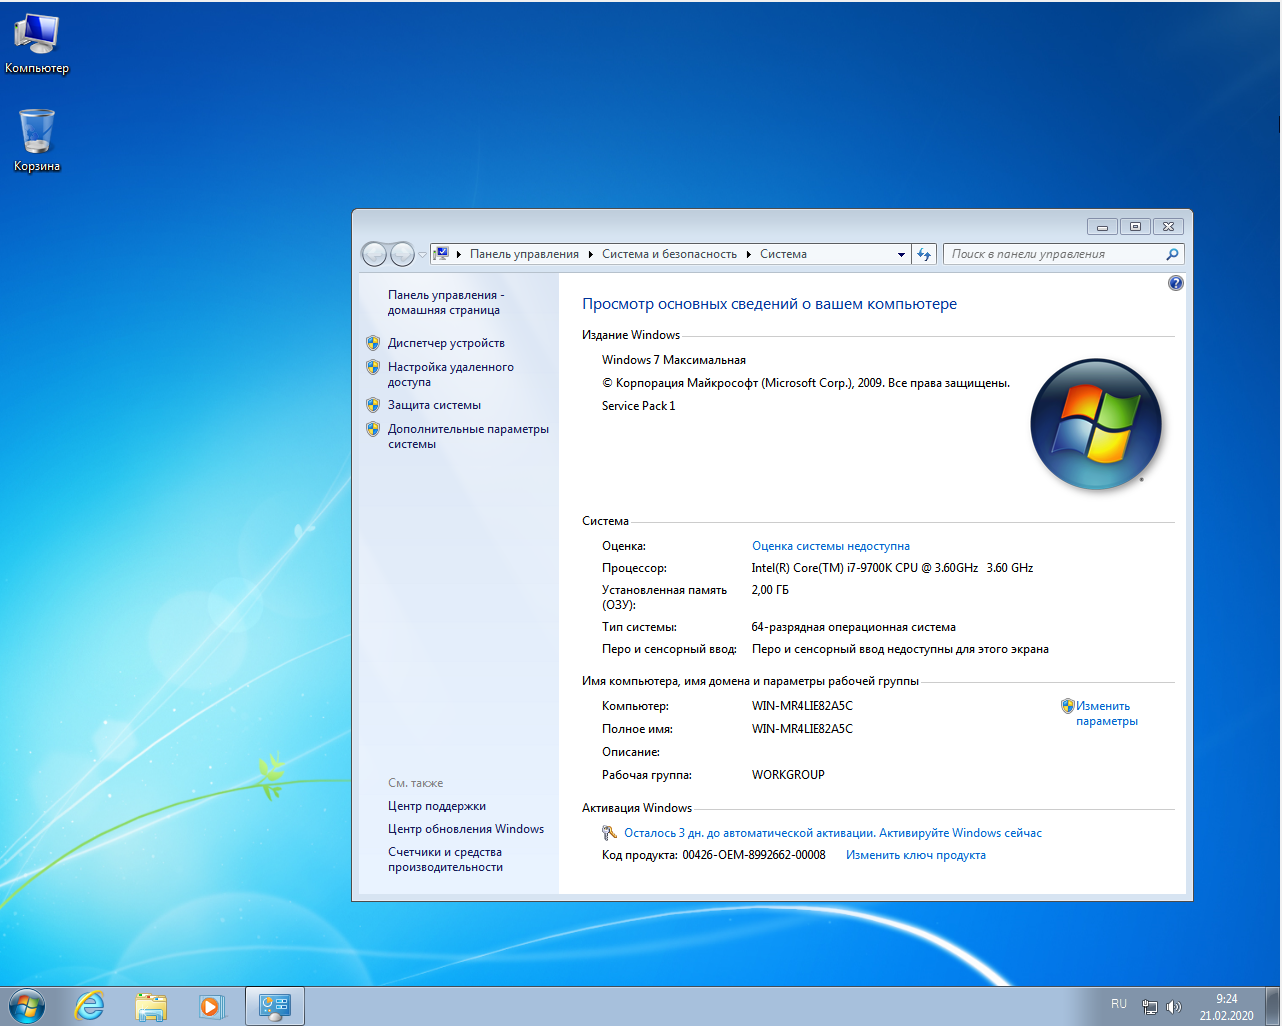 64-Разрядная Операционная система, процессор x64. Windows 7 Ultimate ключ. Виндовс 7 максимальная 64 бит картинки. Самая максимальная винда. Модель windows 7